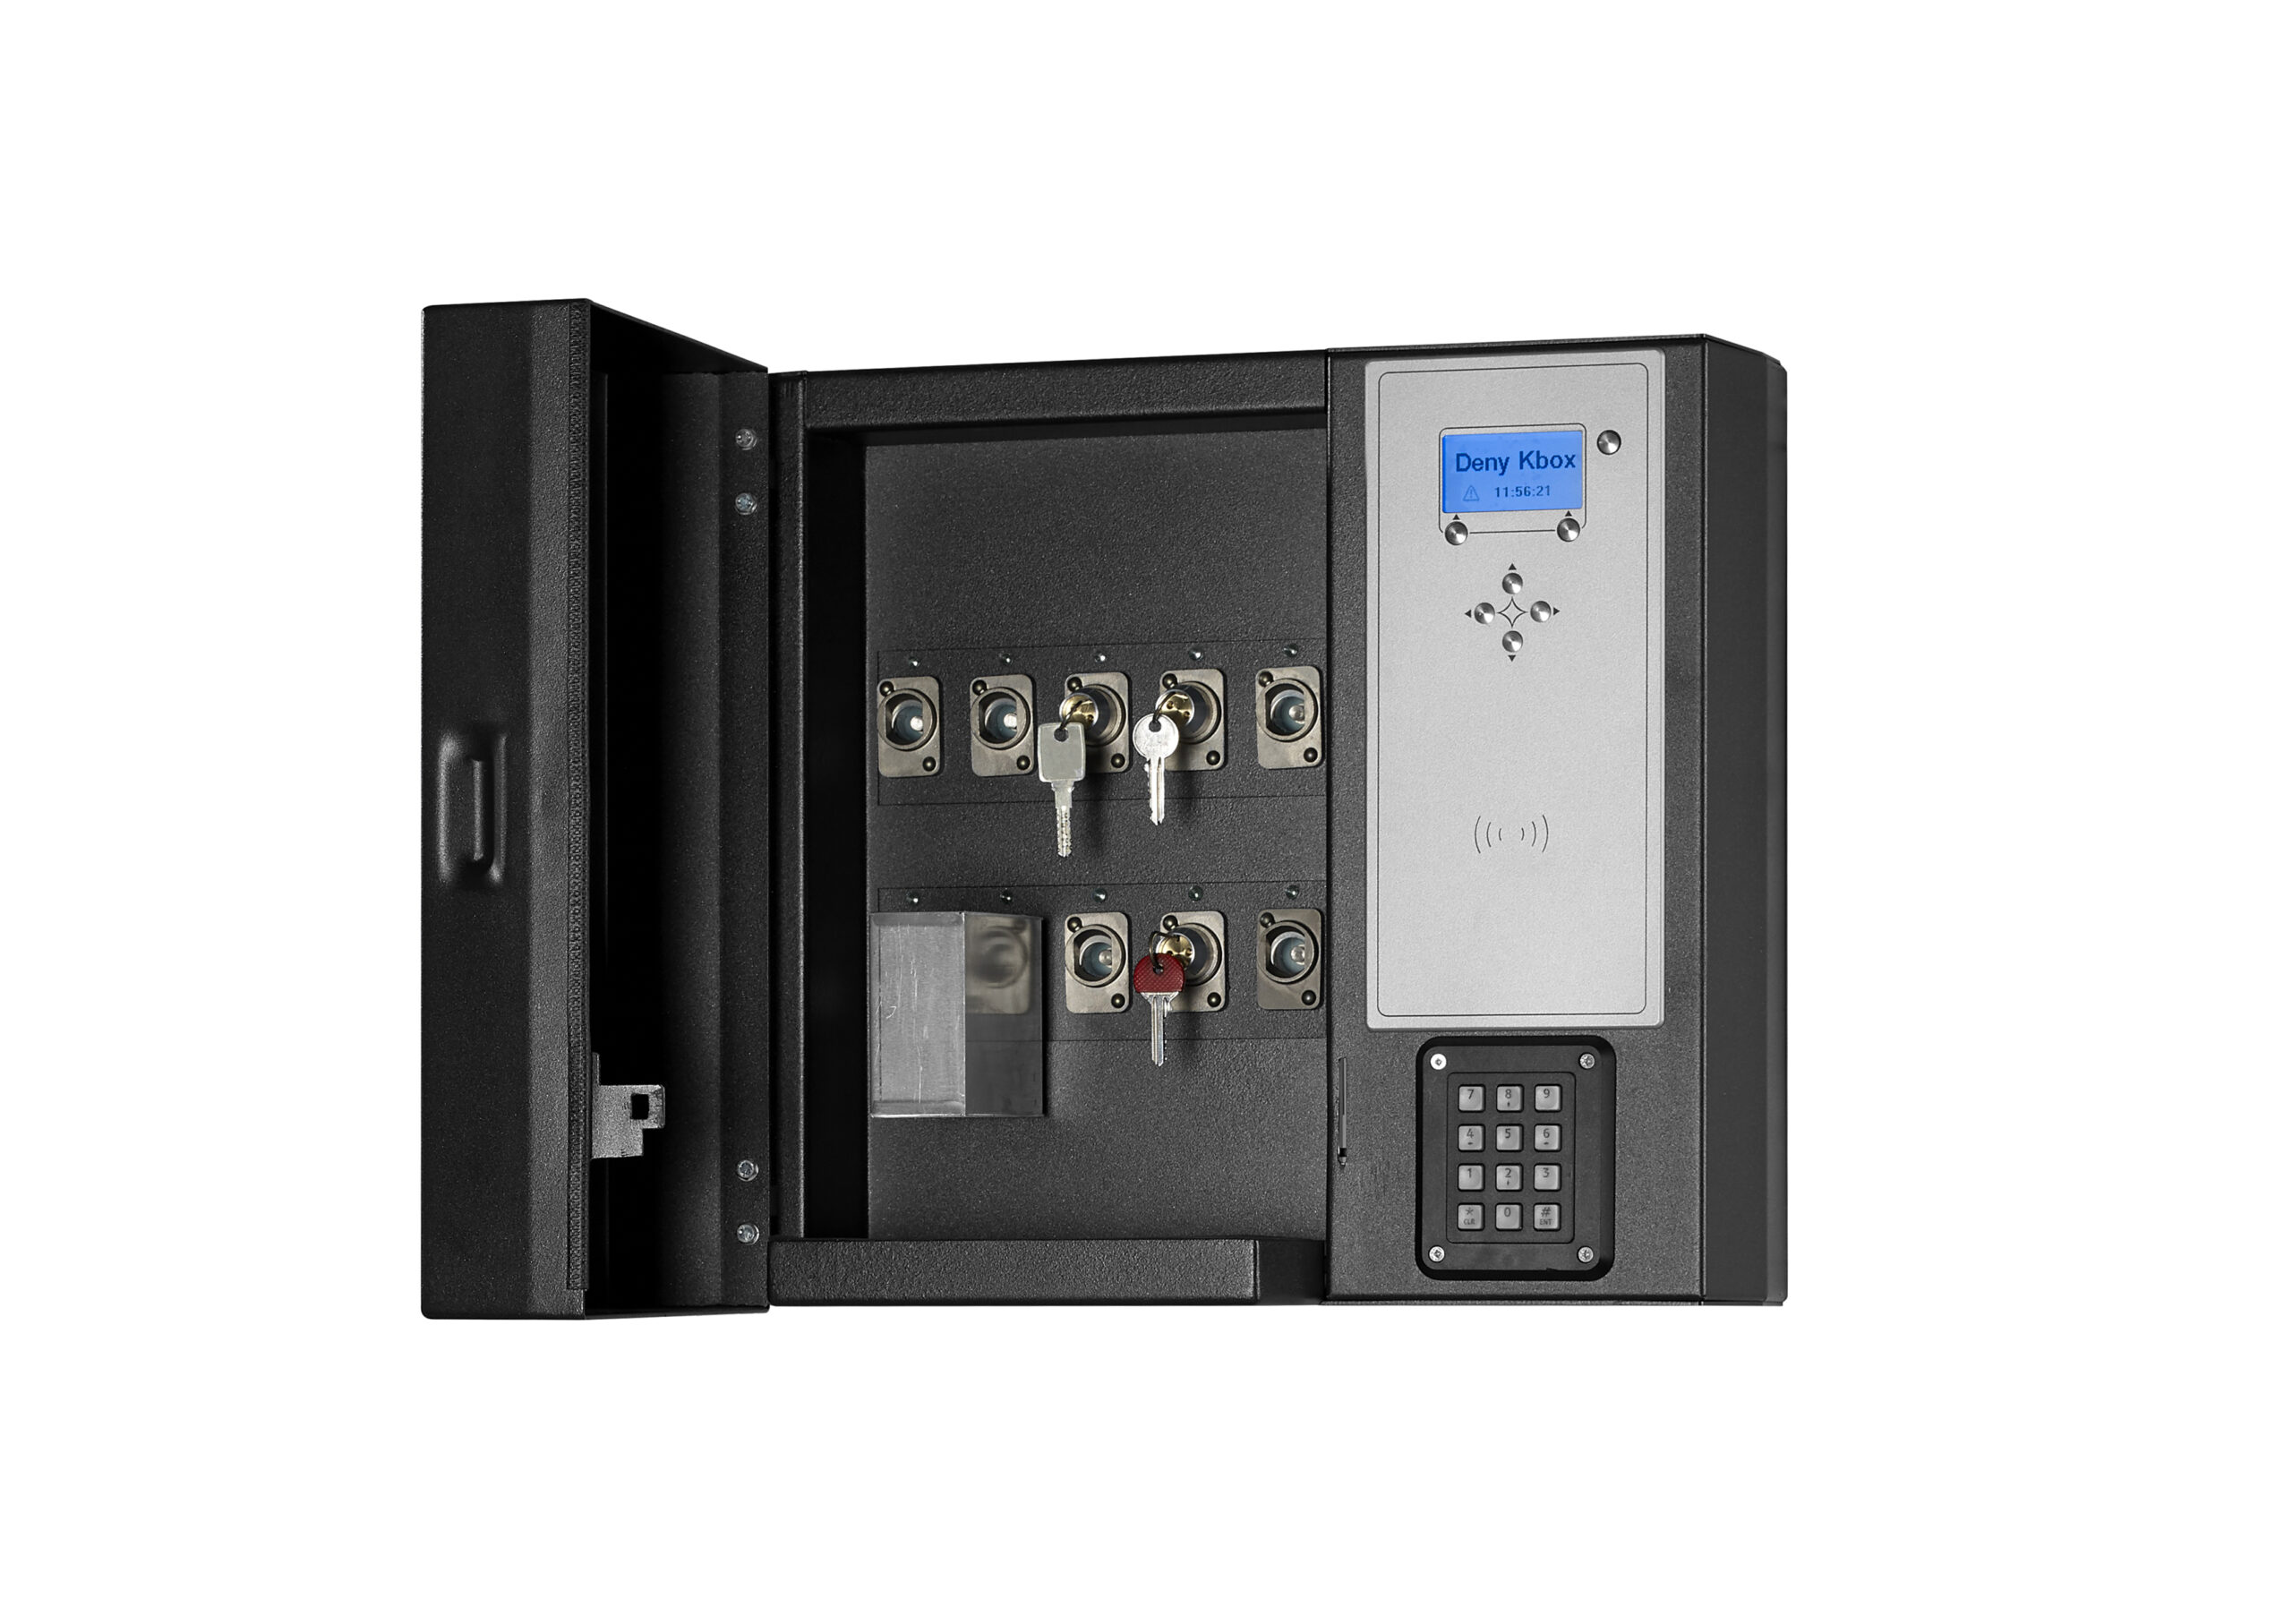 DÉNY SECURITY présente KBOX, l'armoire électronique qui simplifie la gestion des clés